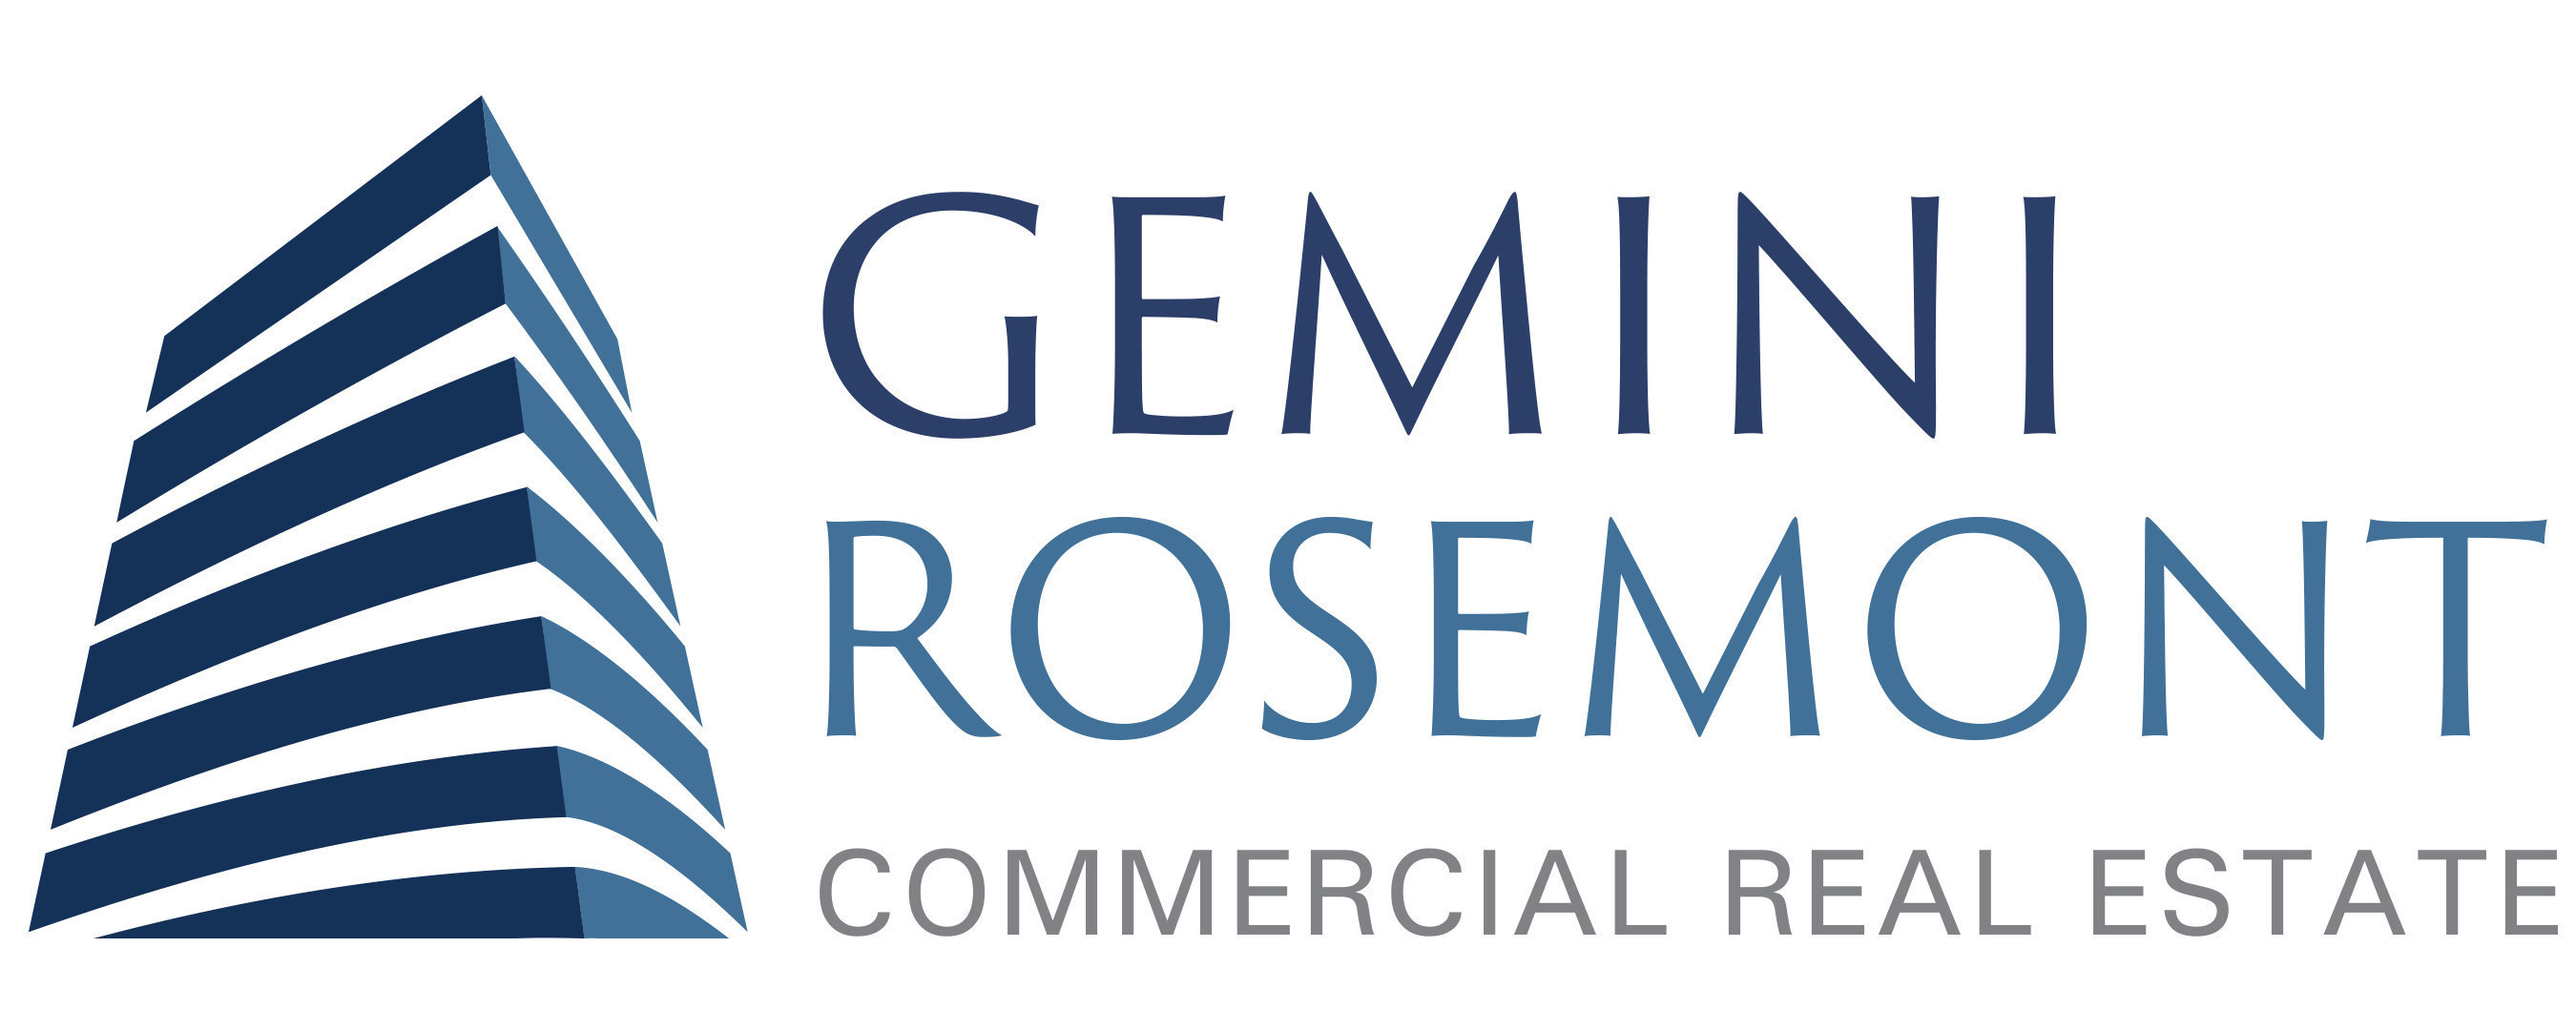 Gemini Rosemont Commercial Real Estate